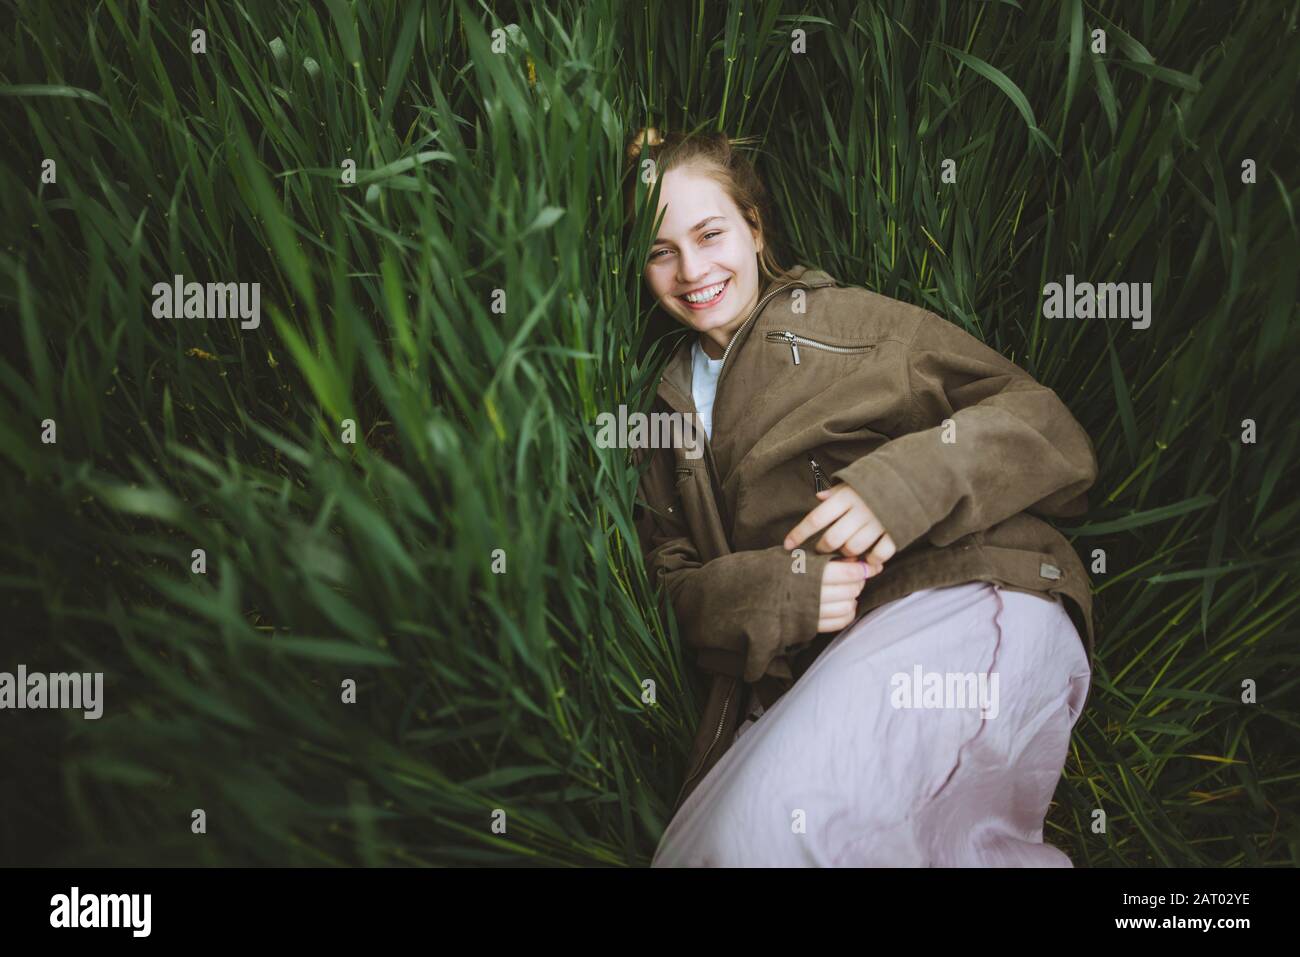 Lächelnde Frau im Gras liegend Stockfoto